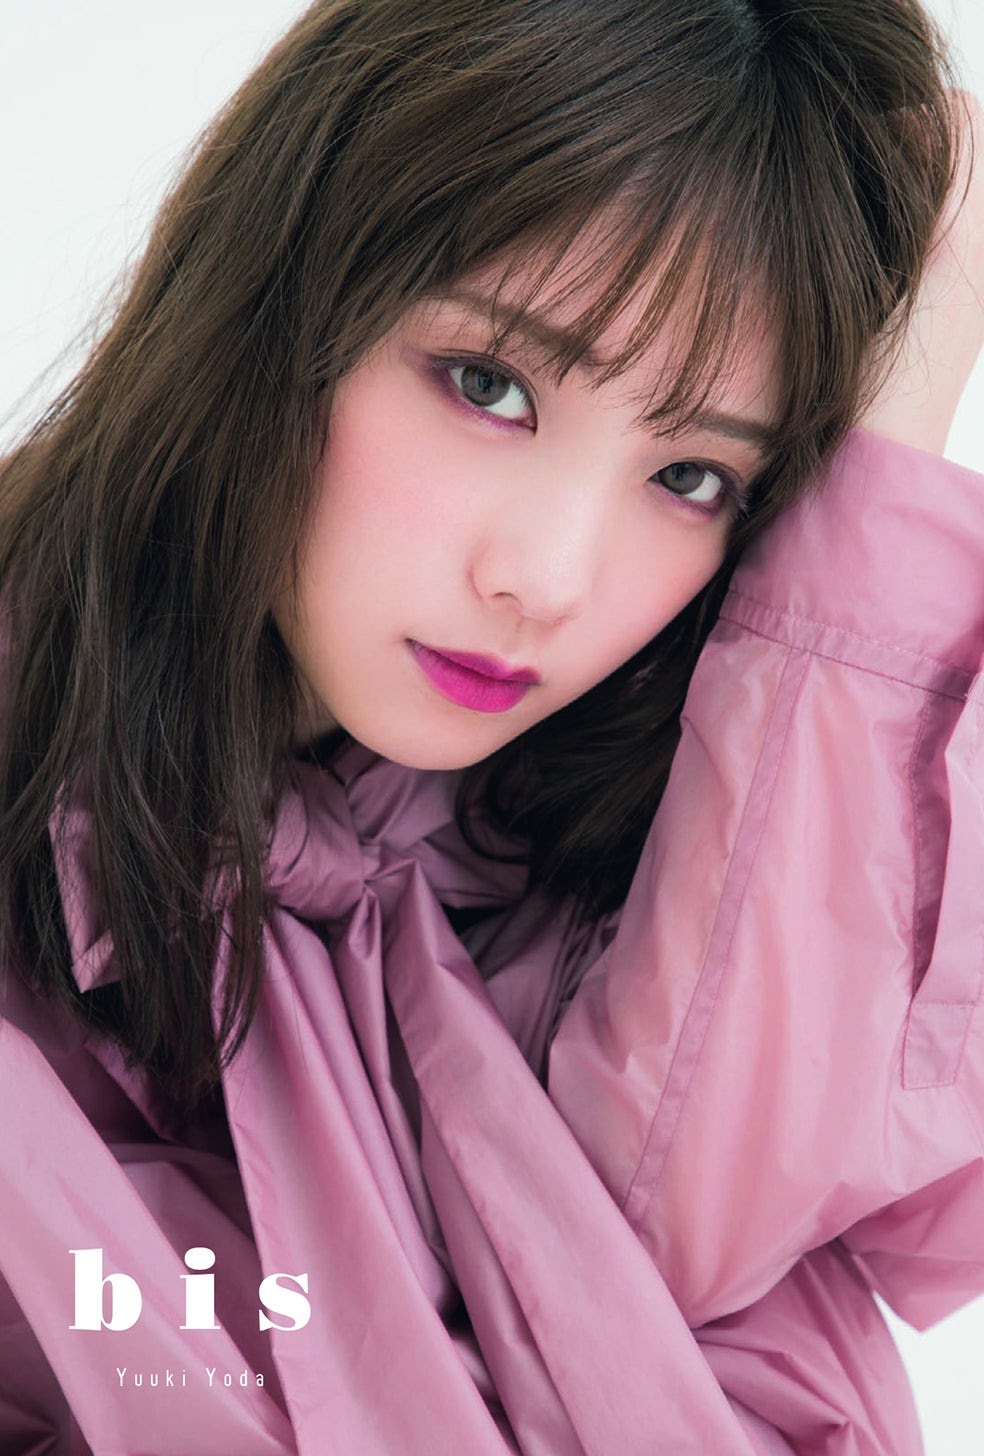 Yuki Yoda 与田祐希, BIS Magazine 2019.11